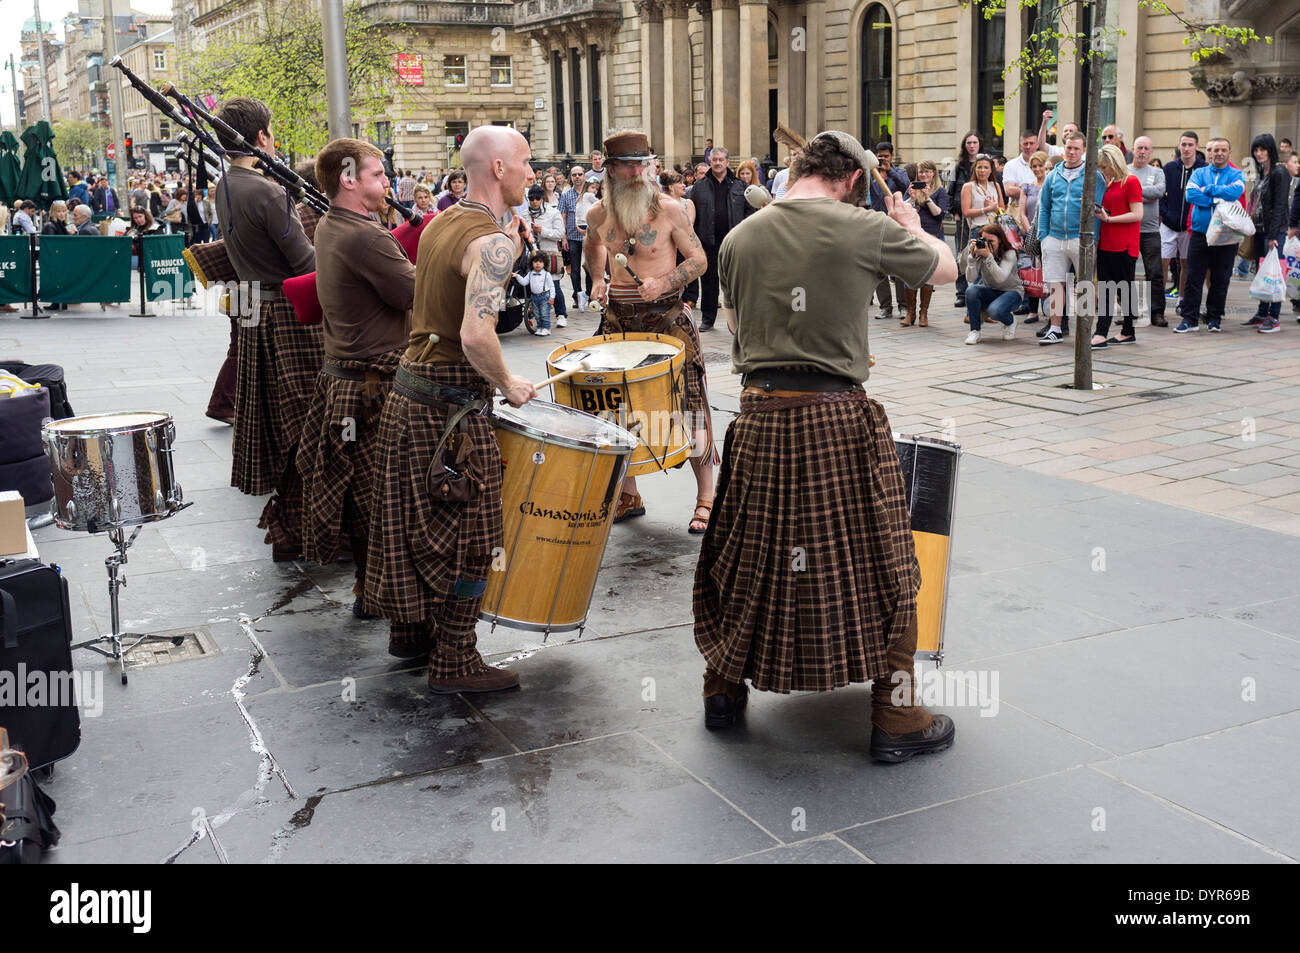 Schottische Gruppe Clanadonia als Straßenmusikant in Buchanan Street, Glasgow, Scotland, UK Stockfoto